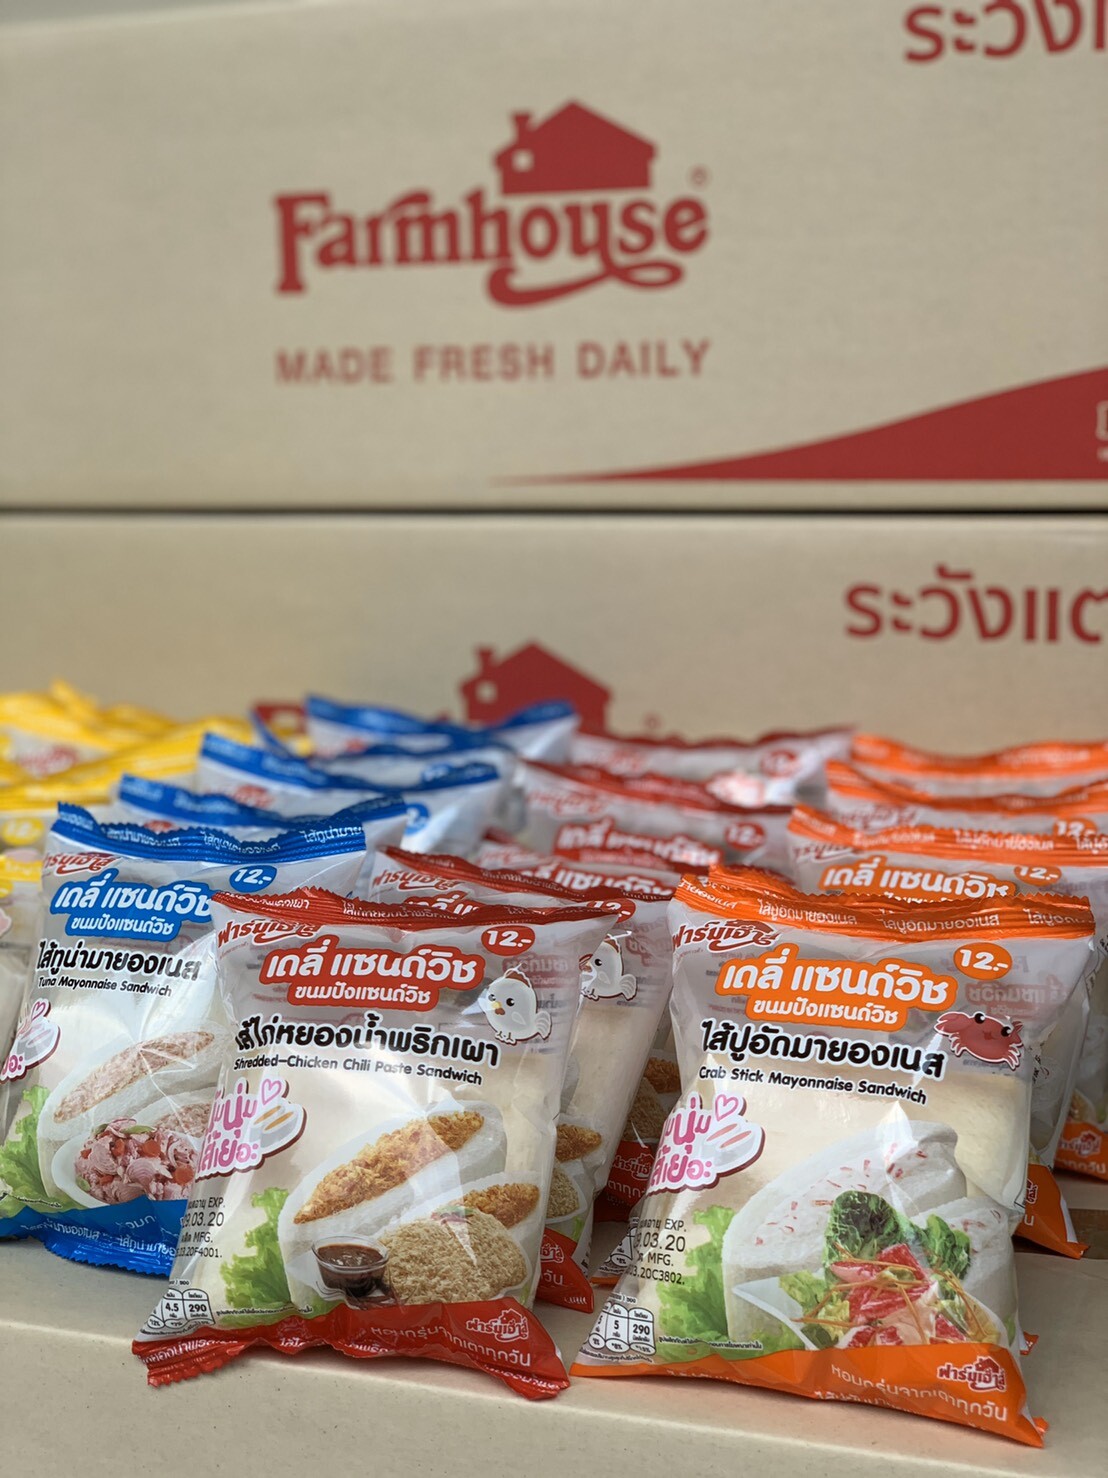 “ฟาร์มเฮ้าส์” ร่วมฝ่าวิกฤตโควิด-19 เดินหน้าเร่งกระบวนการผลิต เปิดบริการส่งขนมปังฟรีถึงบ้าน พร้อมมอบผลิตภัณฑ์กว่า 30,000 ชิ้น แก่บุคลากรทางการแพทย์